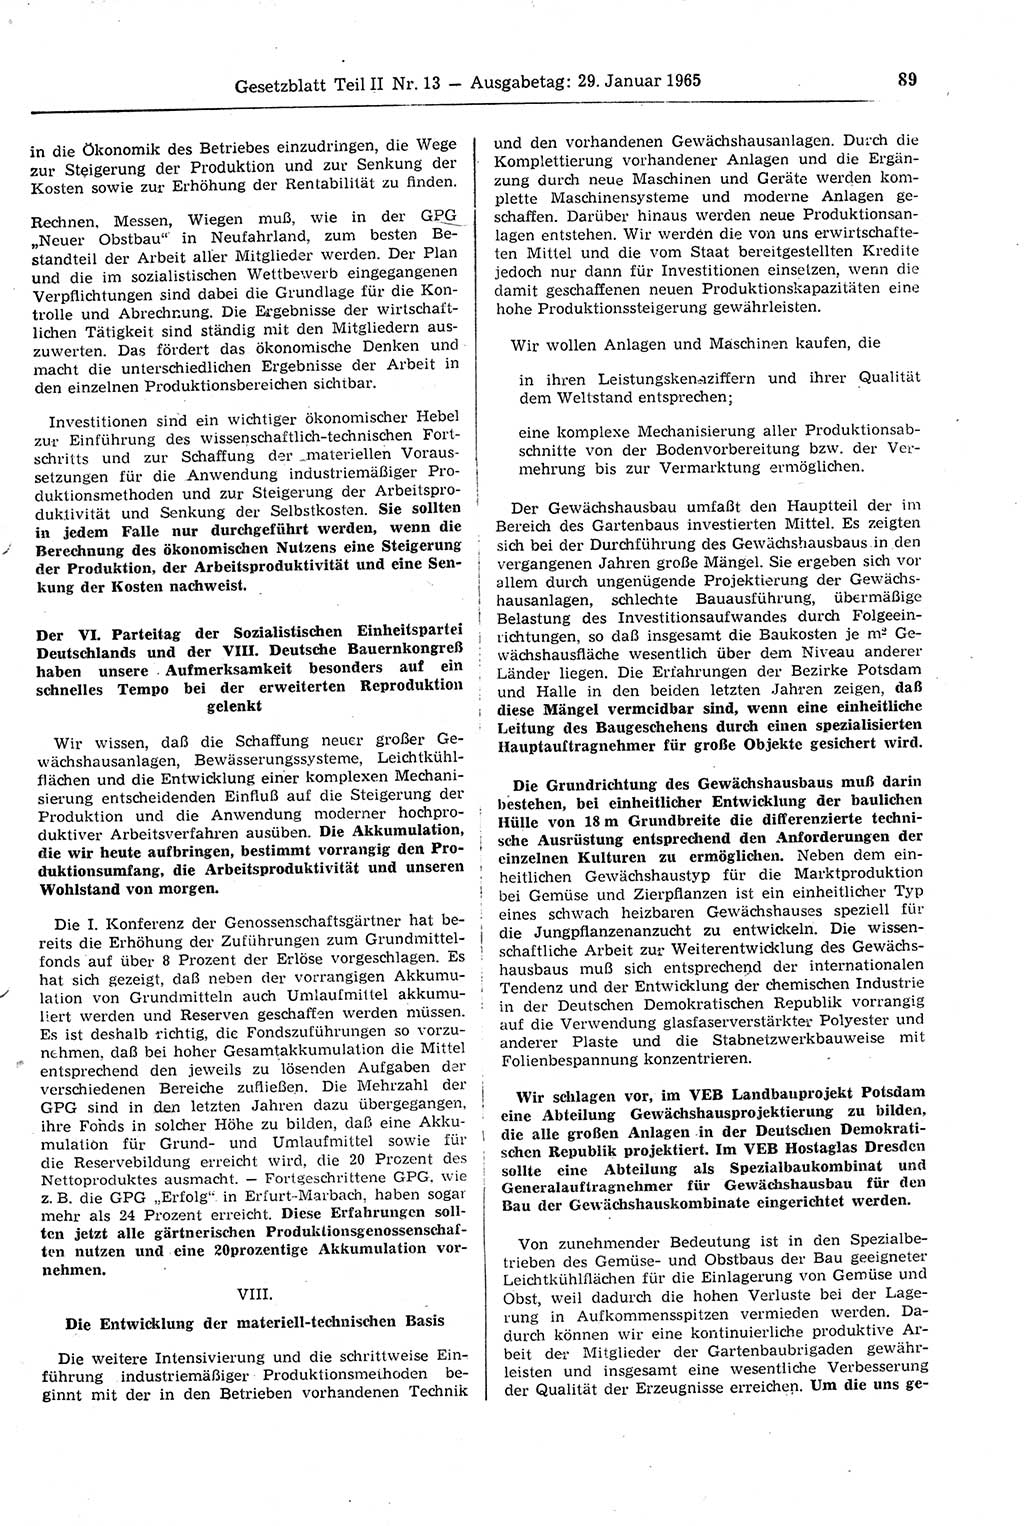 Gesetzblatt (GBl.) der Deutschen Demokratischen Republik (DDR) Teil ⅠⅠ 1965, Seite 89 (GBl. DDR ⅠⅠ 1965, S. 89)